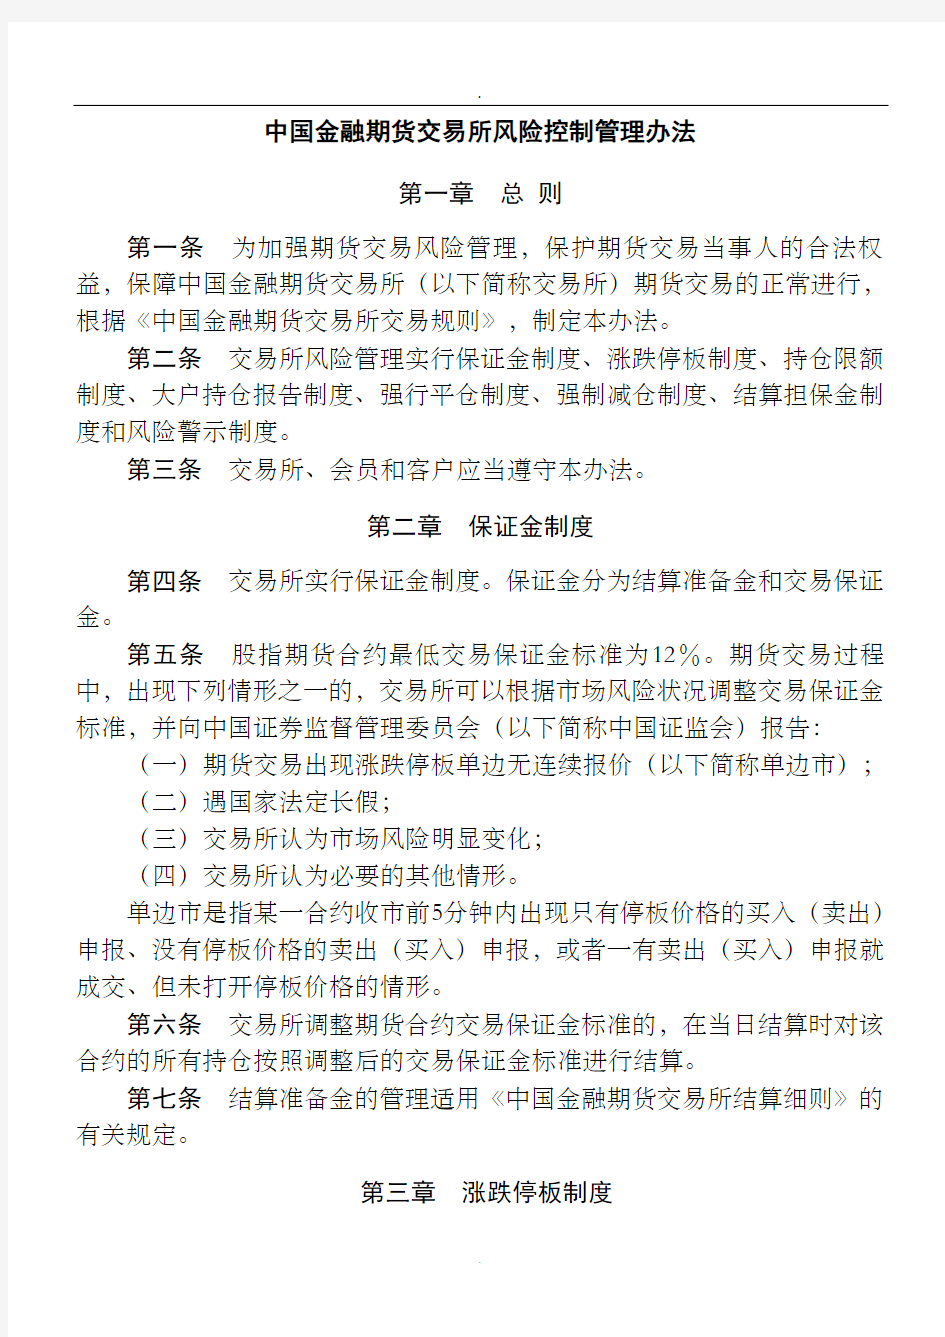 中国金融期货交易所风险控制管理办法doc中国金融期货交